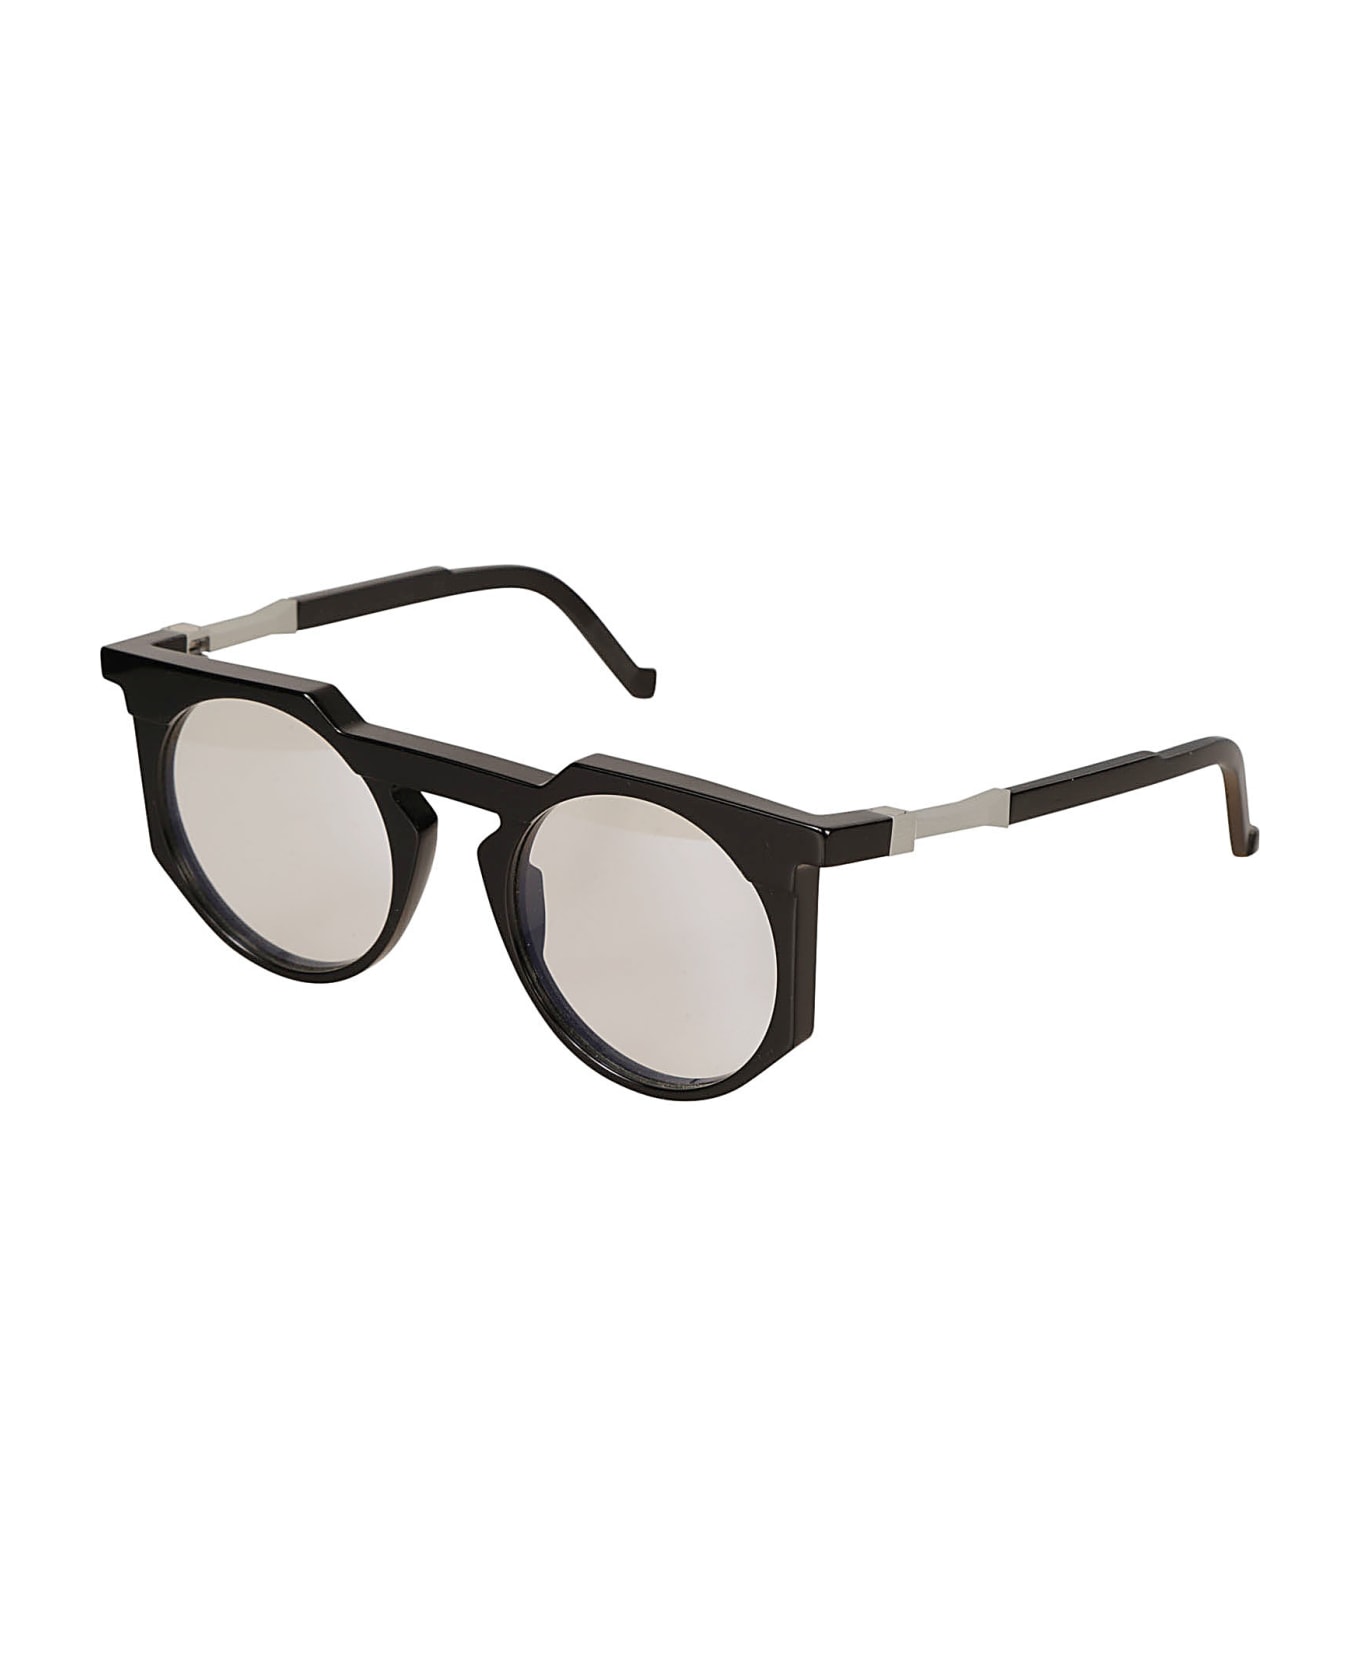 VAVA Clear Lens Round Frame Glasses Glasses - Black アイウェア